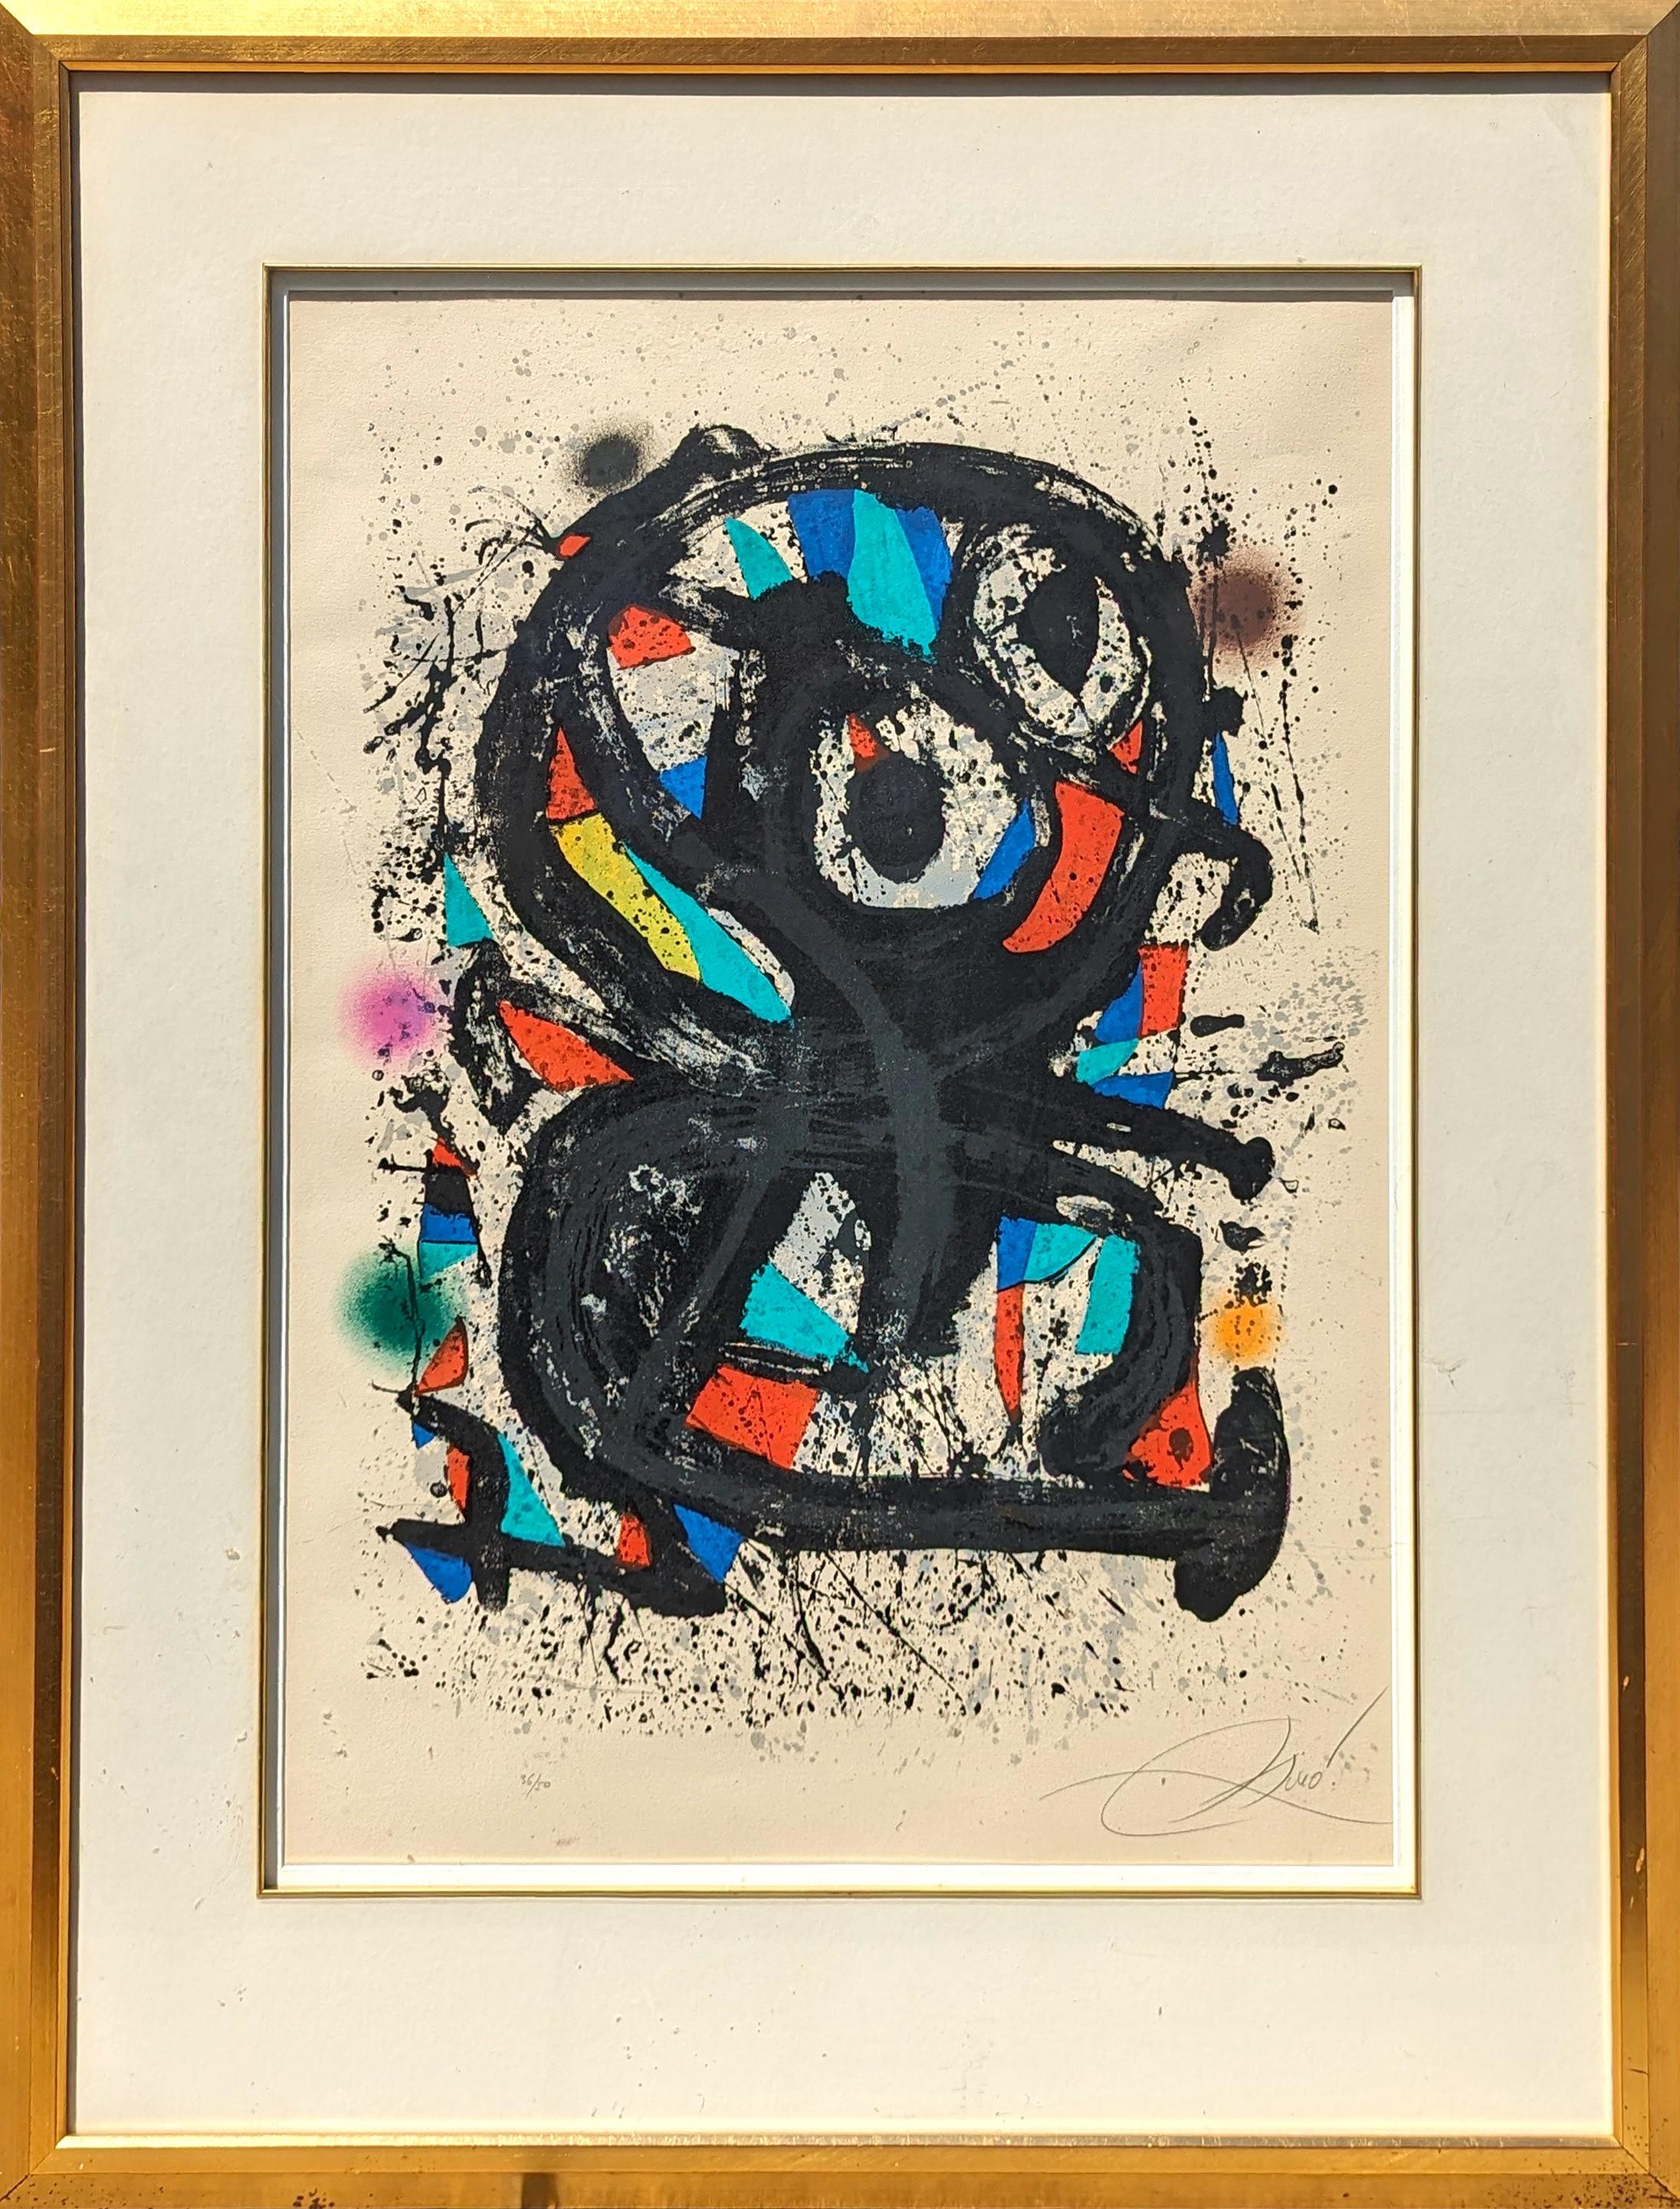 Abstract Print Joan Miró - Lithographie surréaliste moderne abstraite géométrique du Grand Palais, édition 36/50